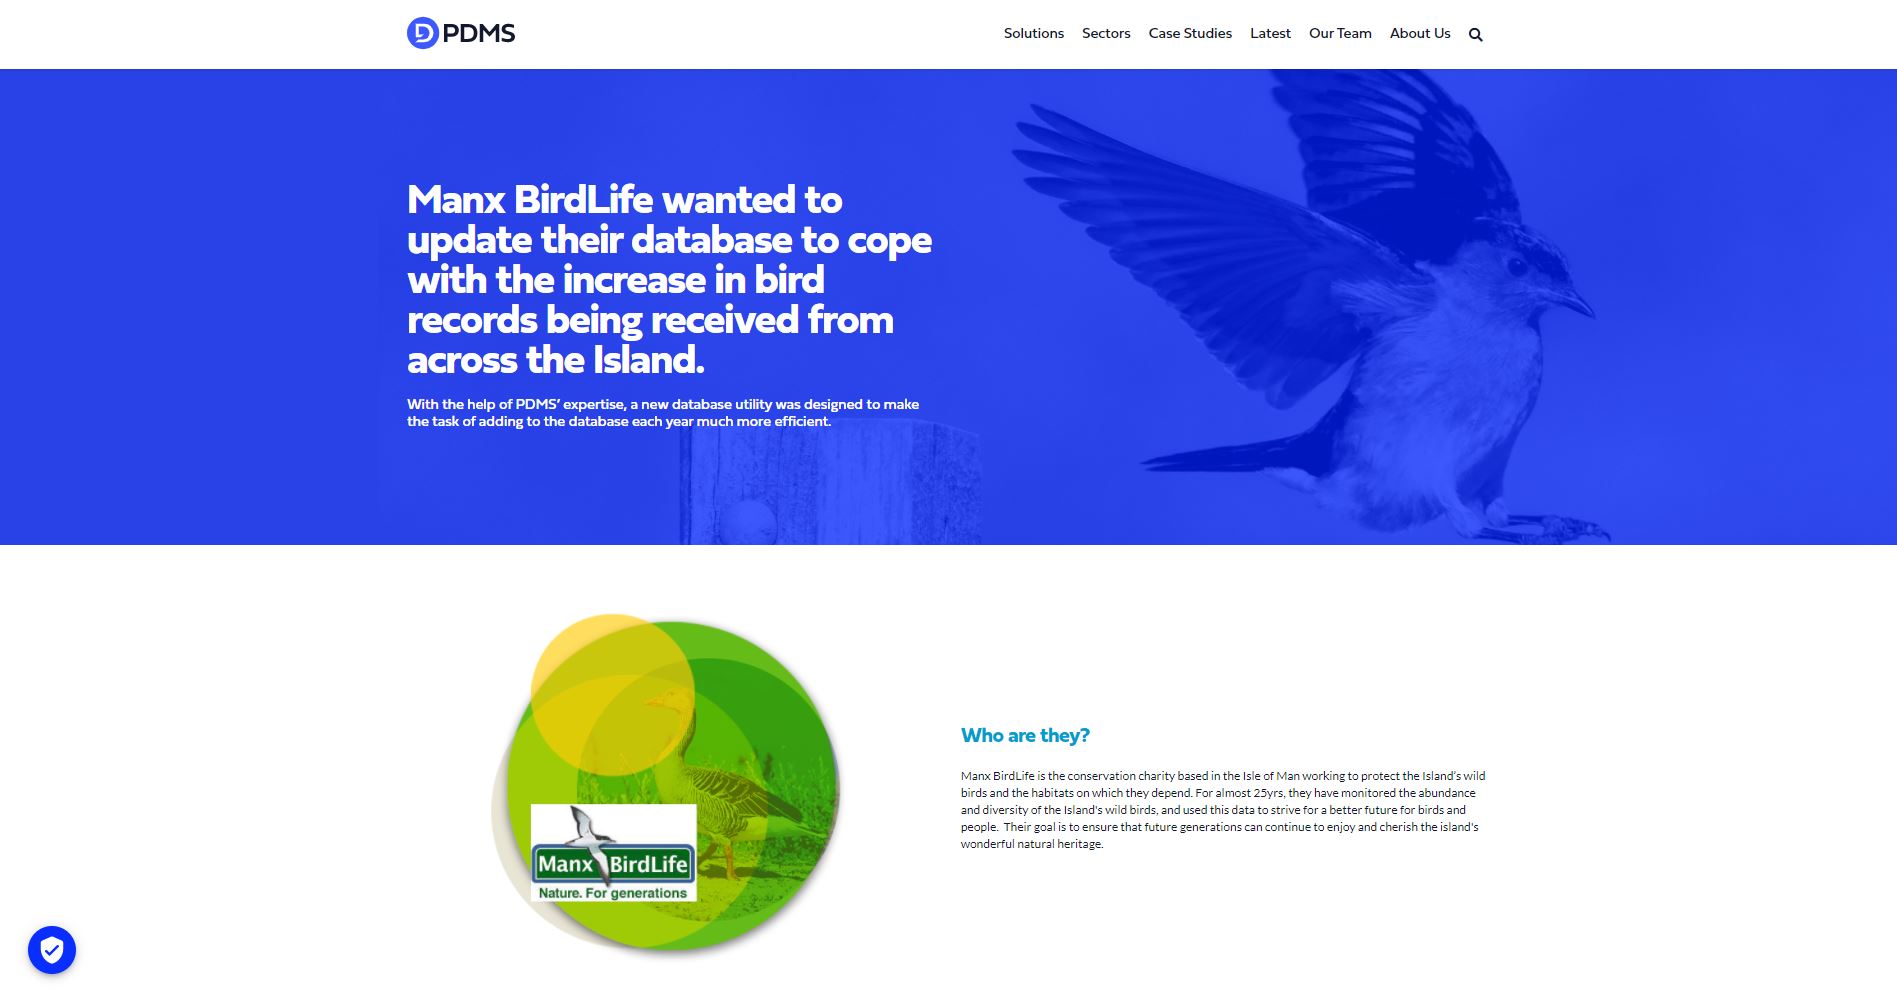 PDMS helps Manx BirdLife with new database utility